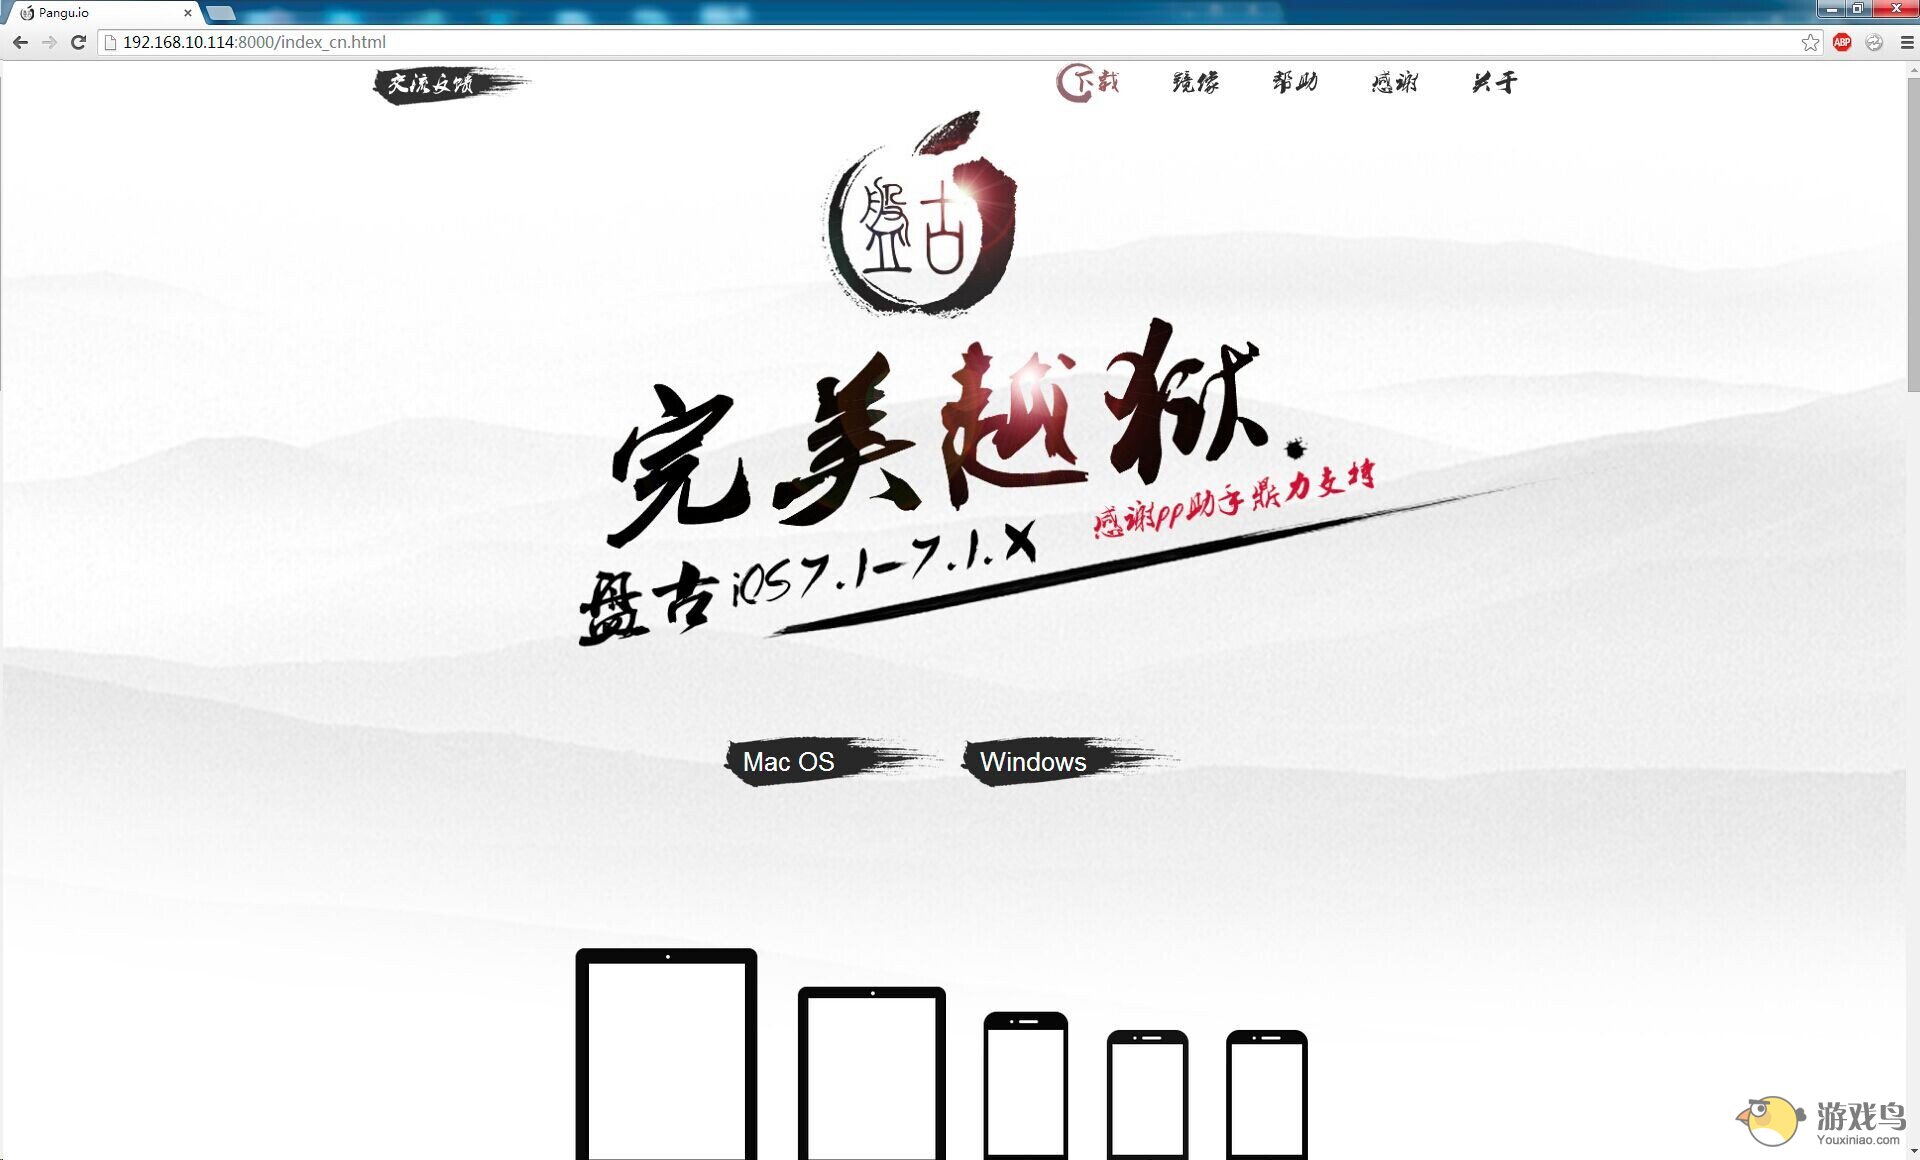 越狱团队联合PP助手同步首发iOS7.1.1完美越狱工具[图]图片1